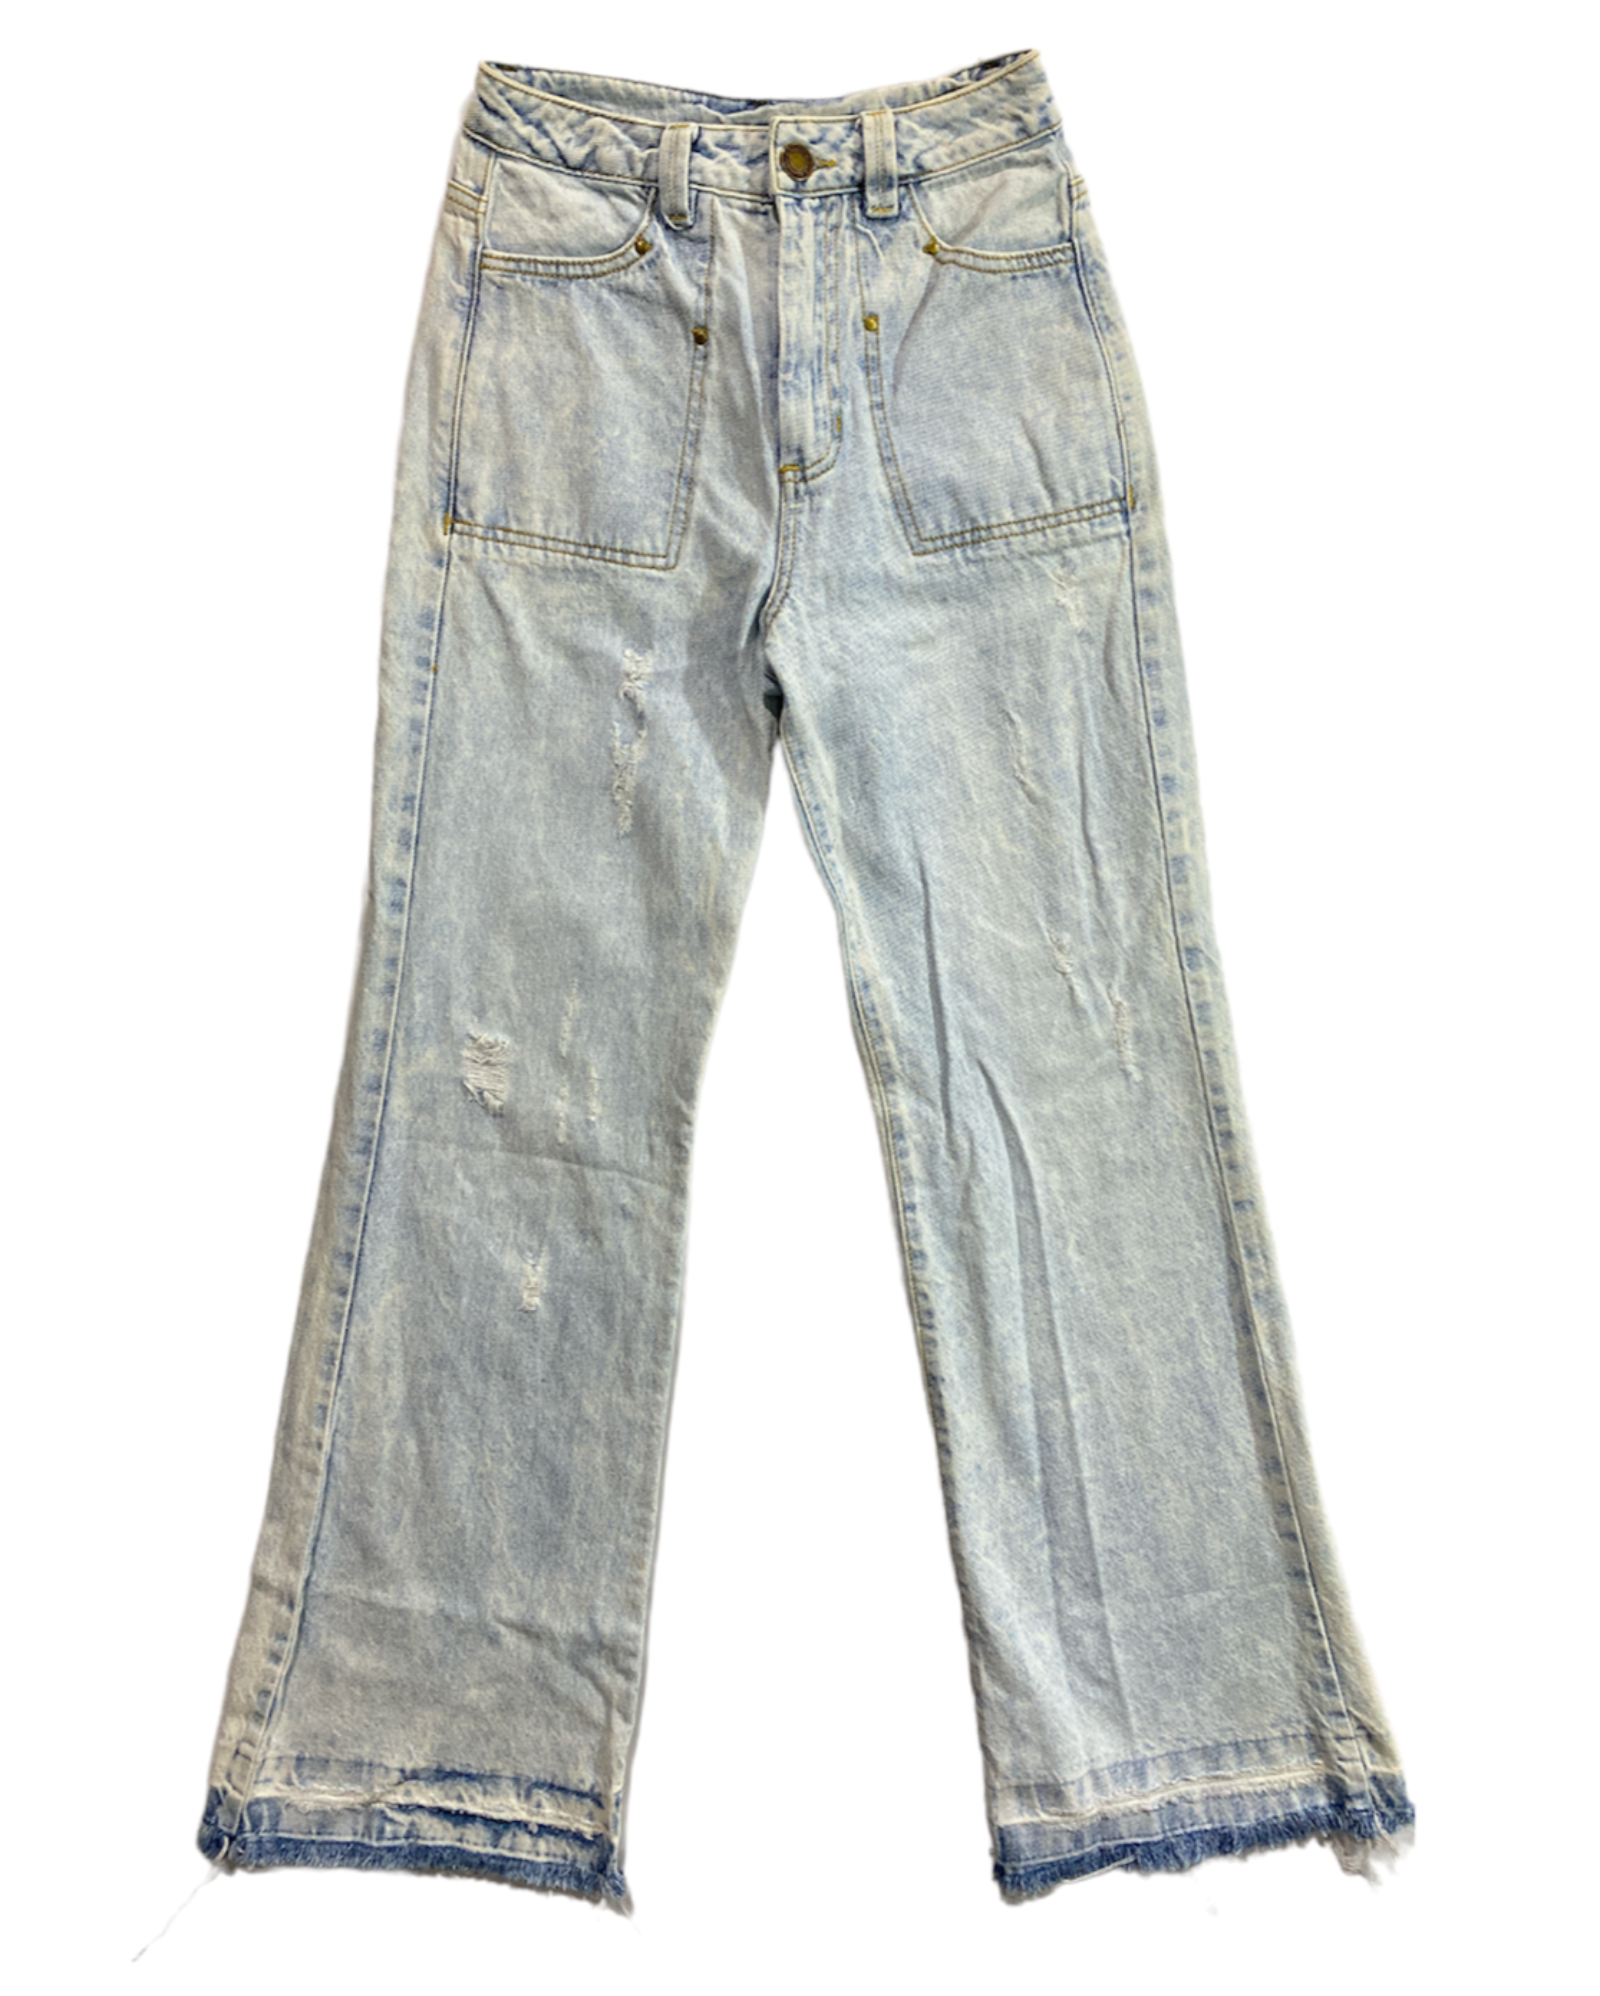 Jeans Acampanados 1